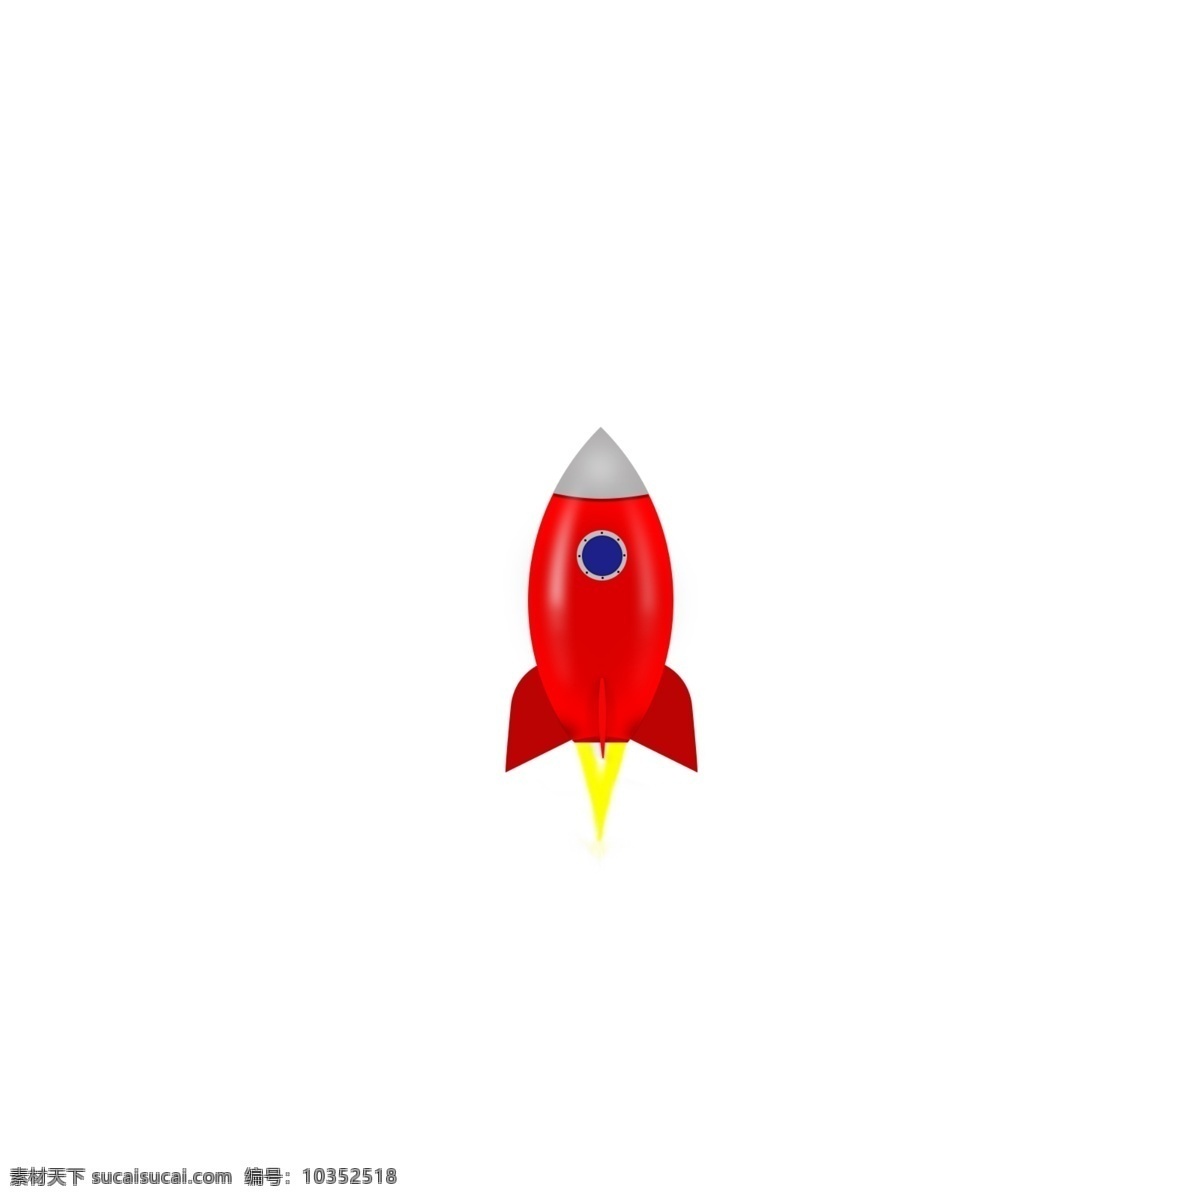 红色火箭 红色 火箭 航天 物体 科技 现代科技 科学研究